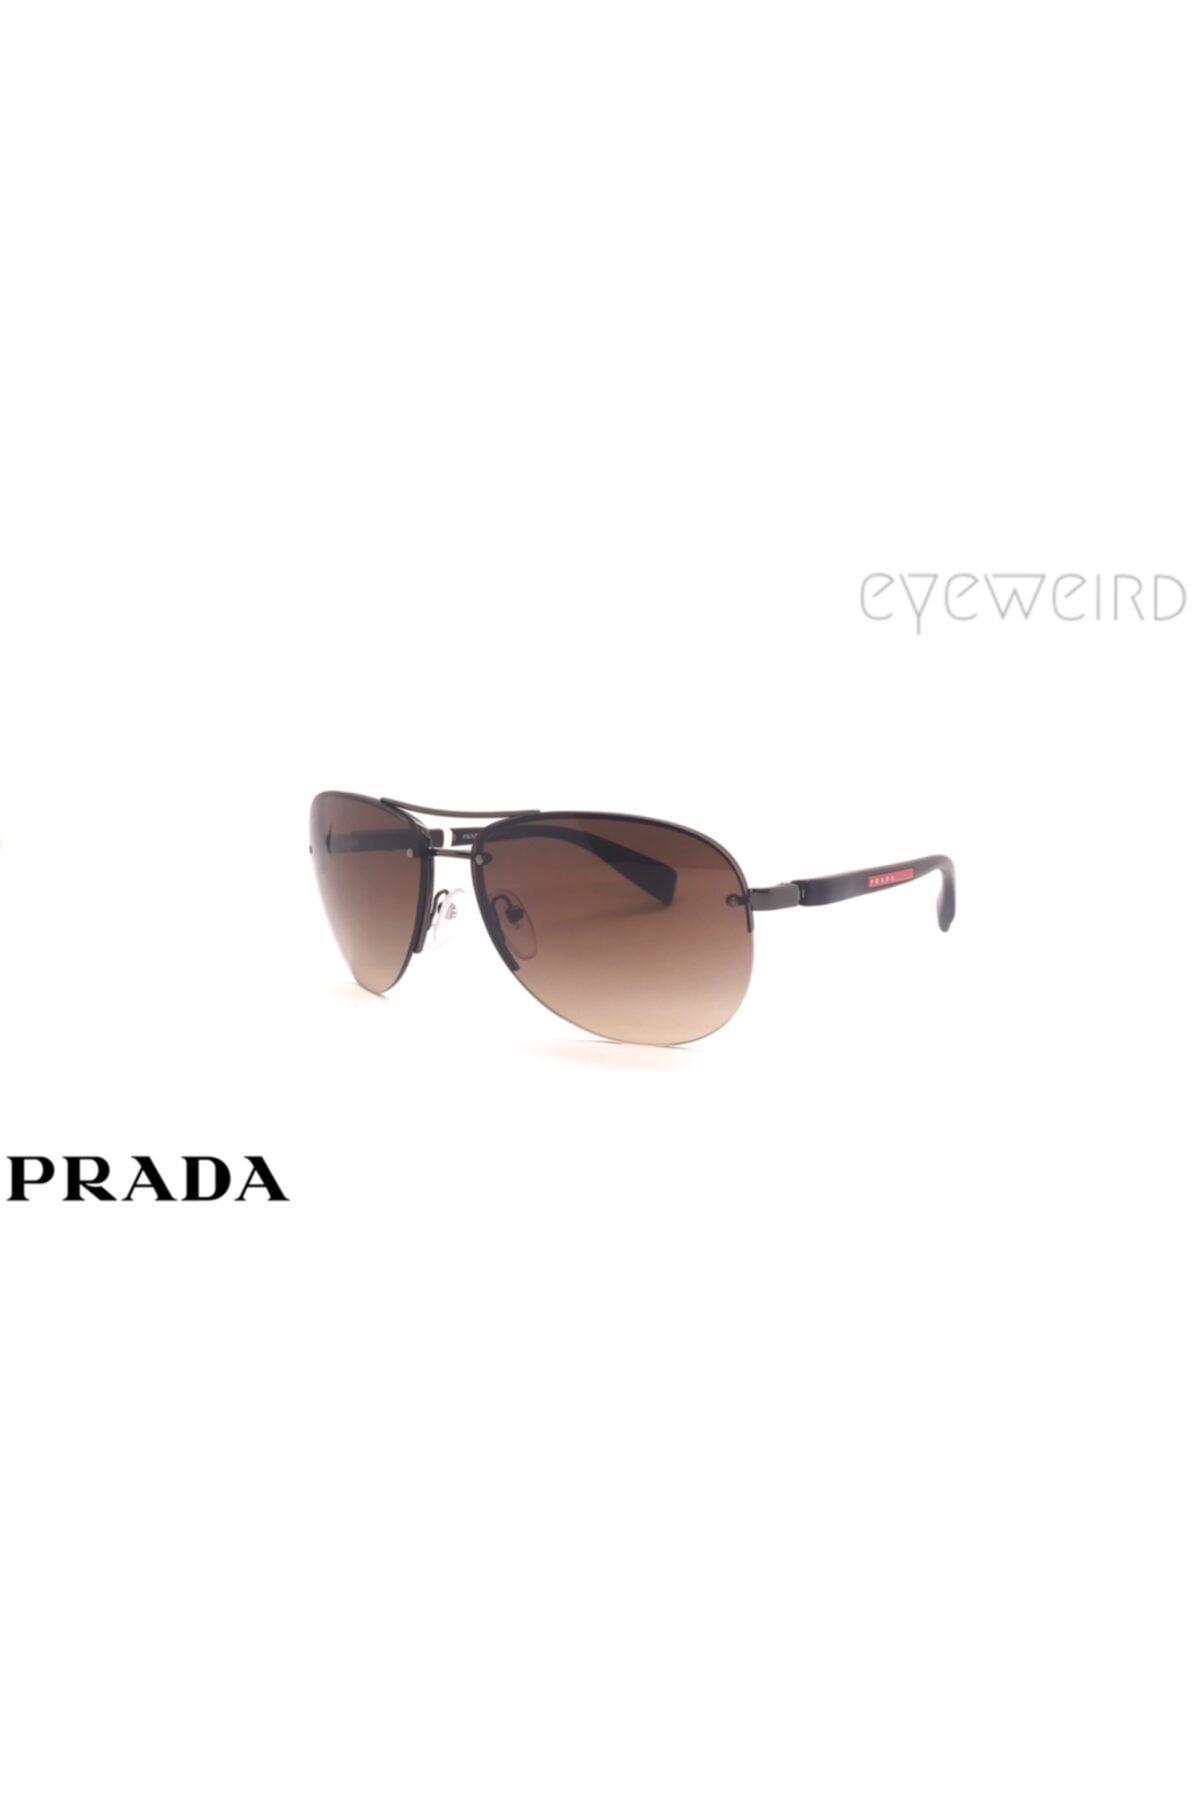 Prada Sps56m Güneş Gözlüğü